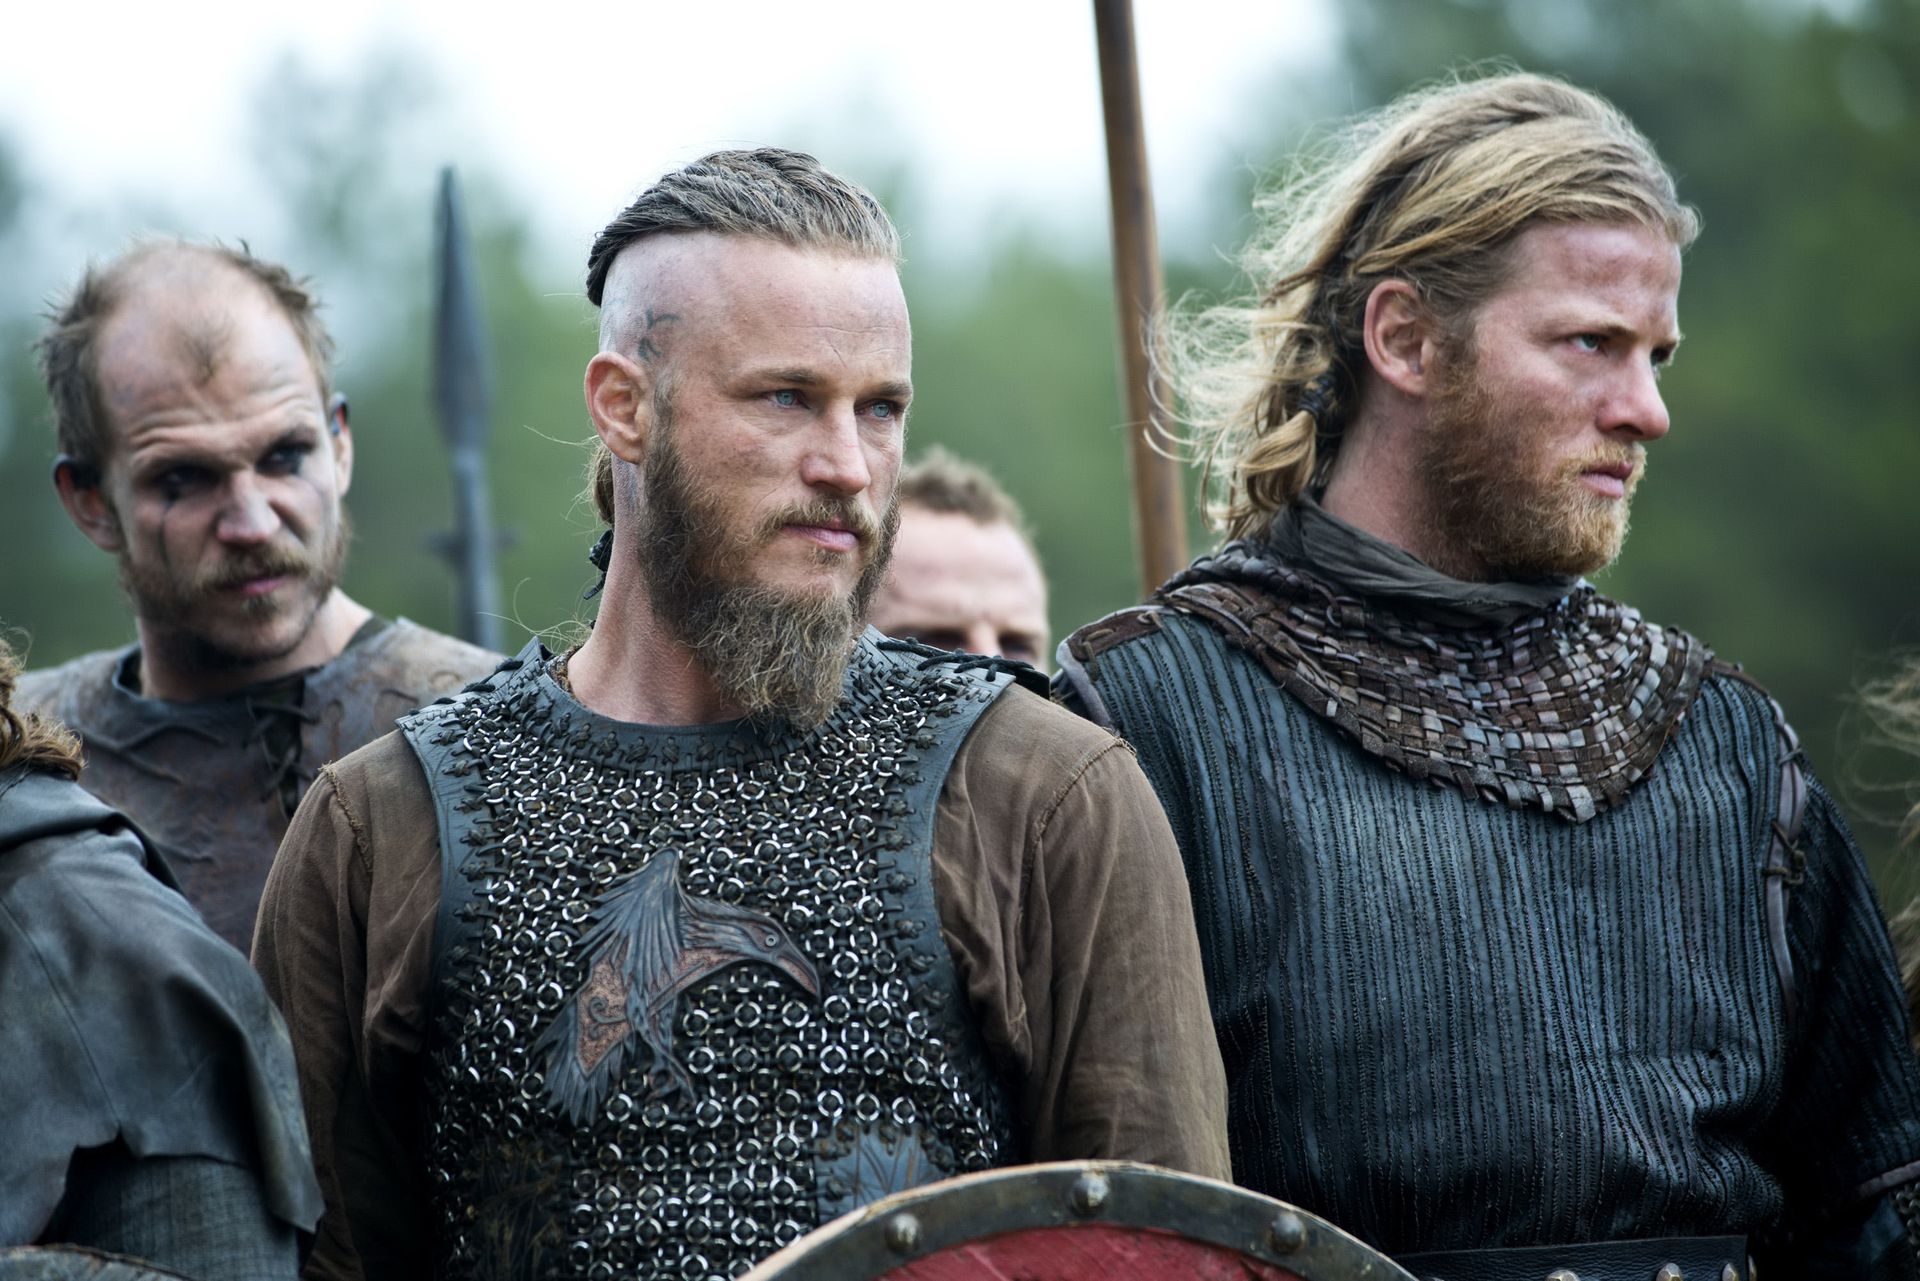 Travis Fimmel színész, a Vikingek főszereplője viseli így a haját a sorozatban / Fotó: profimedia